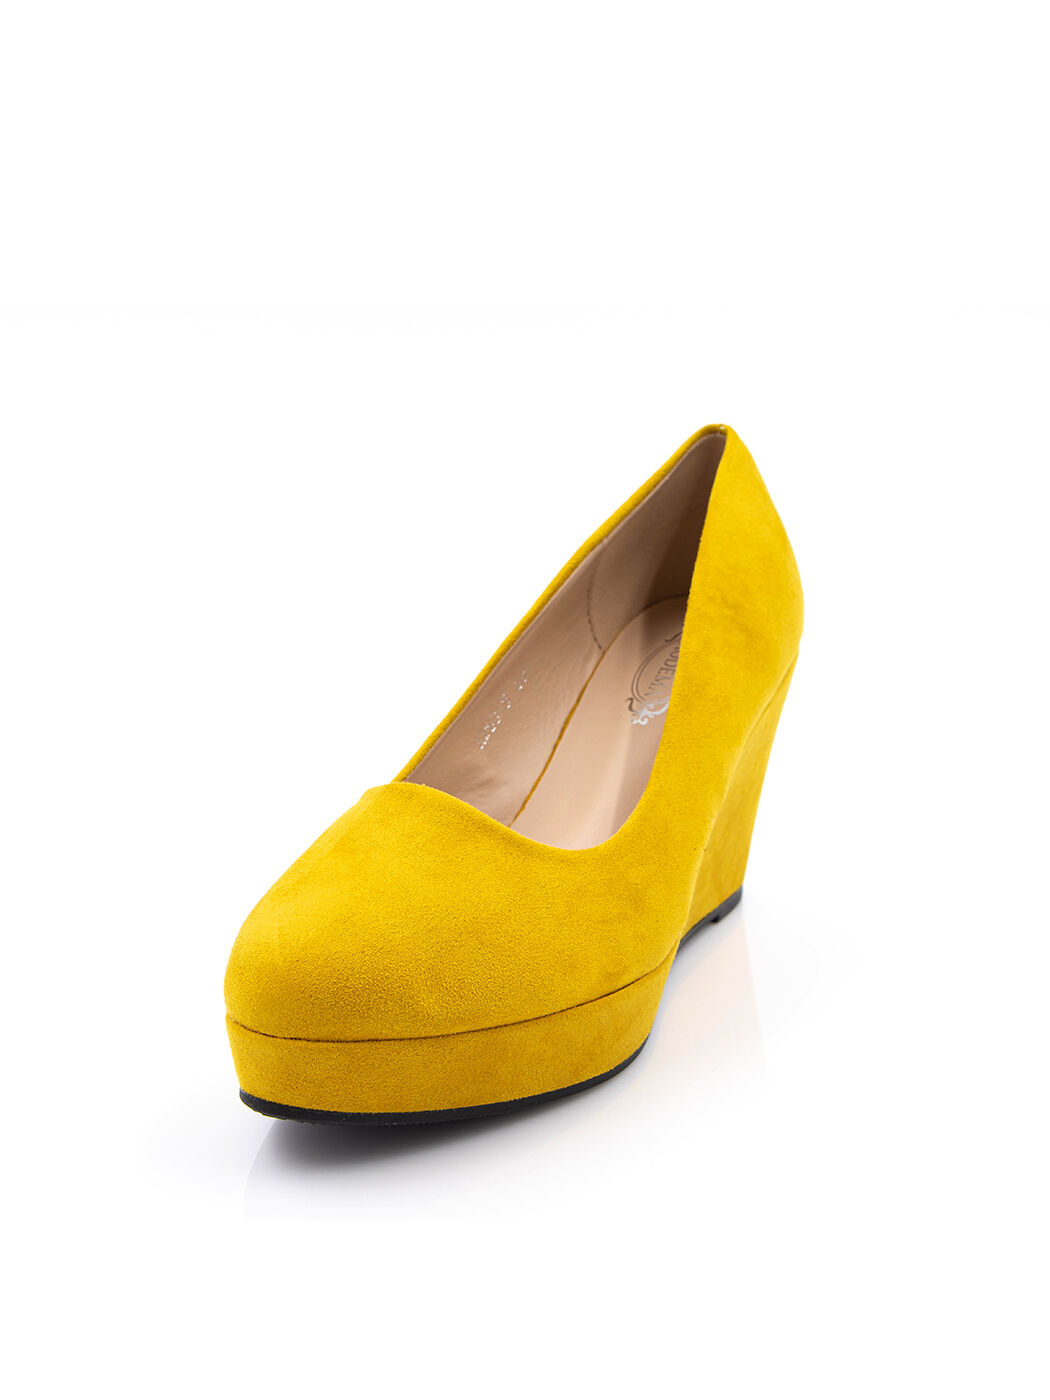 Туфли женские желтые экозамша каблук устойчивый демисезон от производителя 5M вид 0